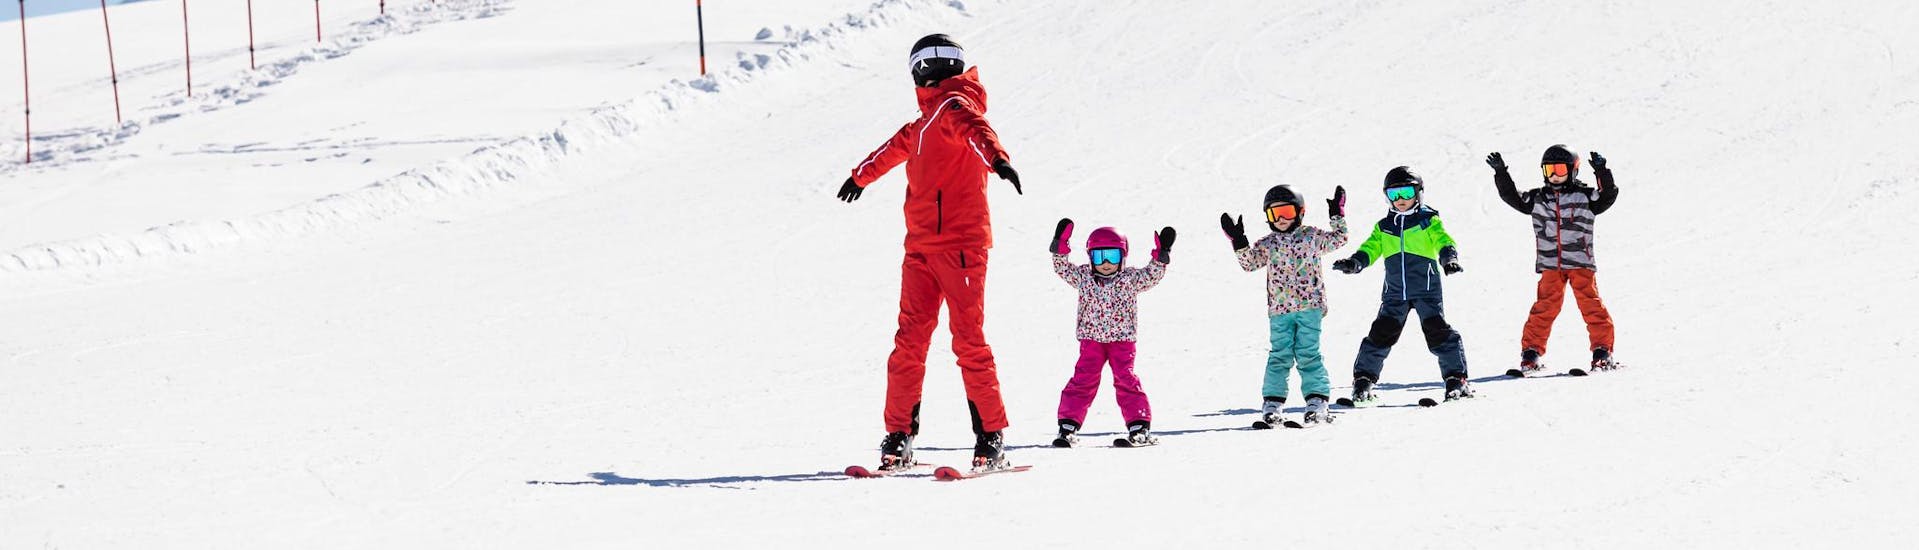 Moniteur de ski et enfants profitent d'une leçon de ski dans une école de ski près de Sallenches.